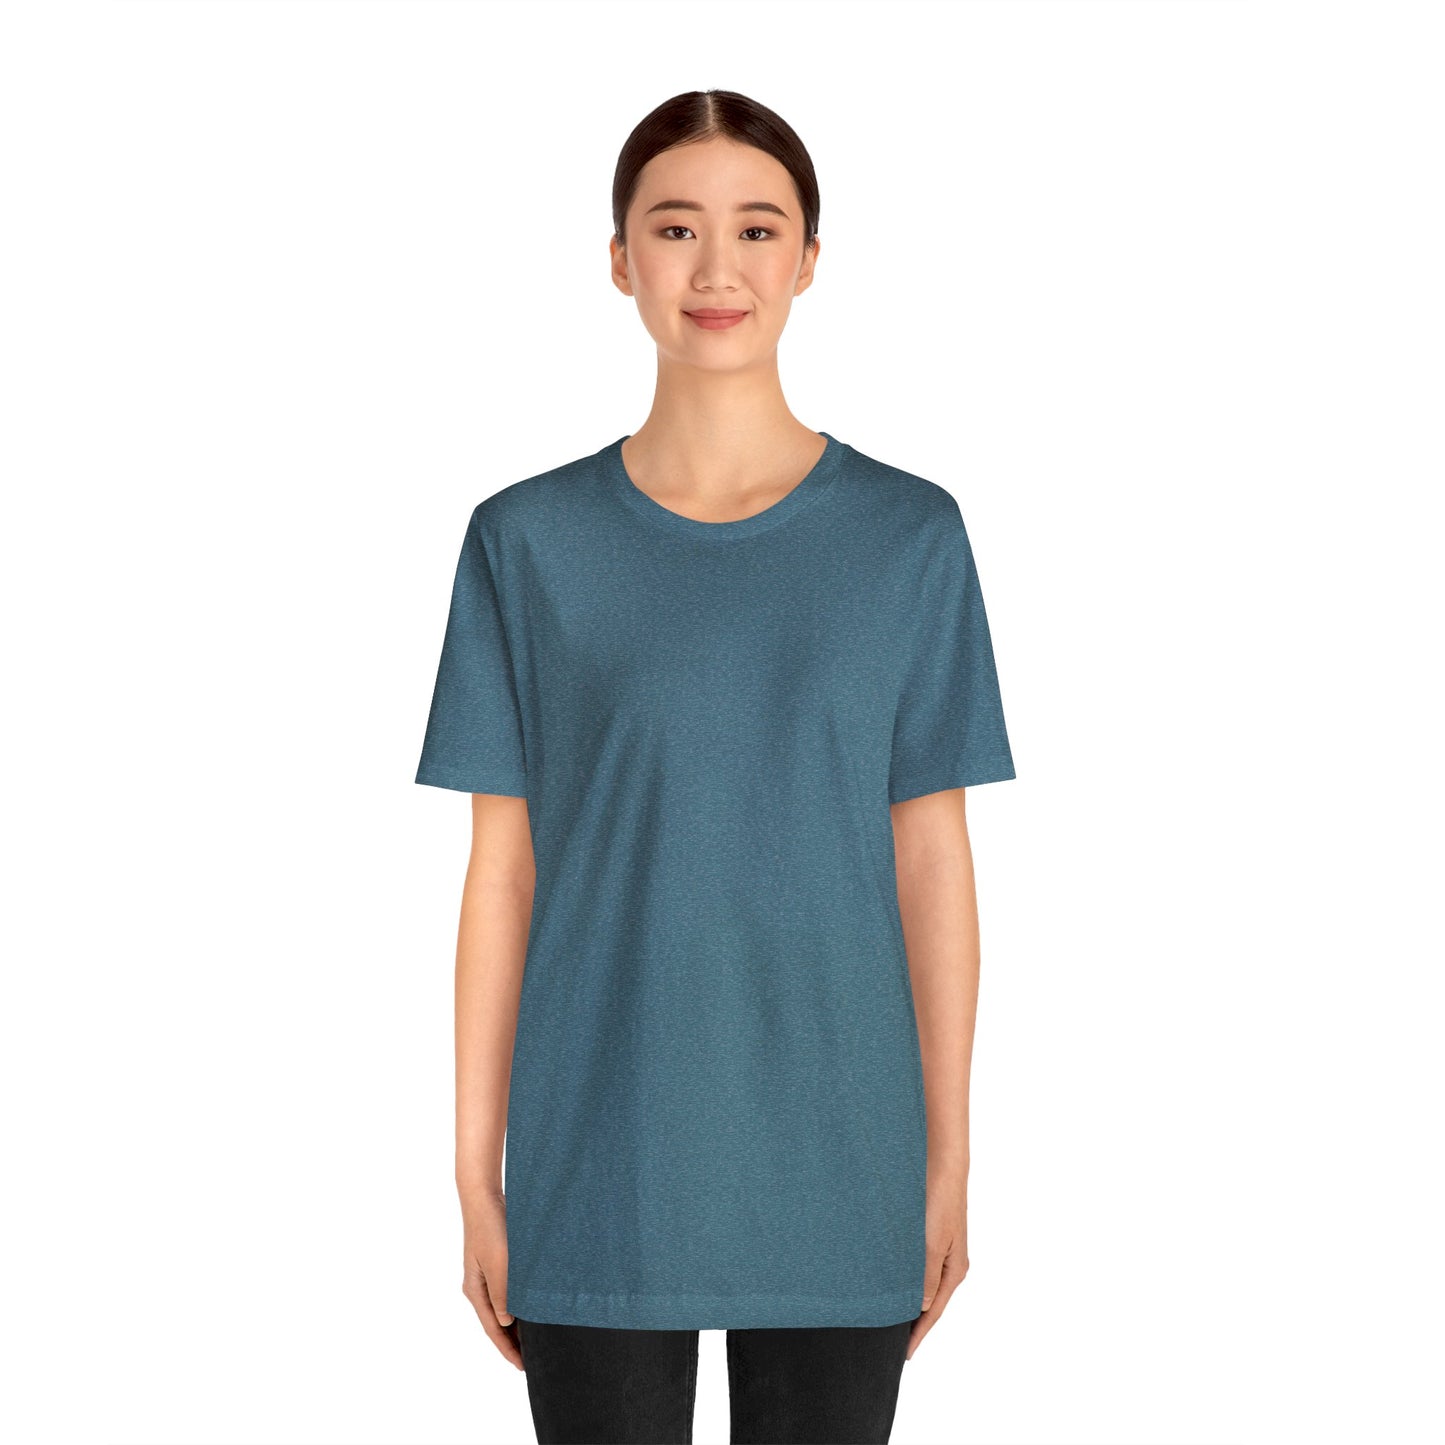 Unisex Jersey Short Sleeve Heather Deep Teal T Shirt